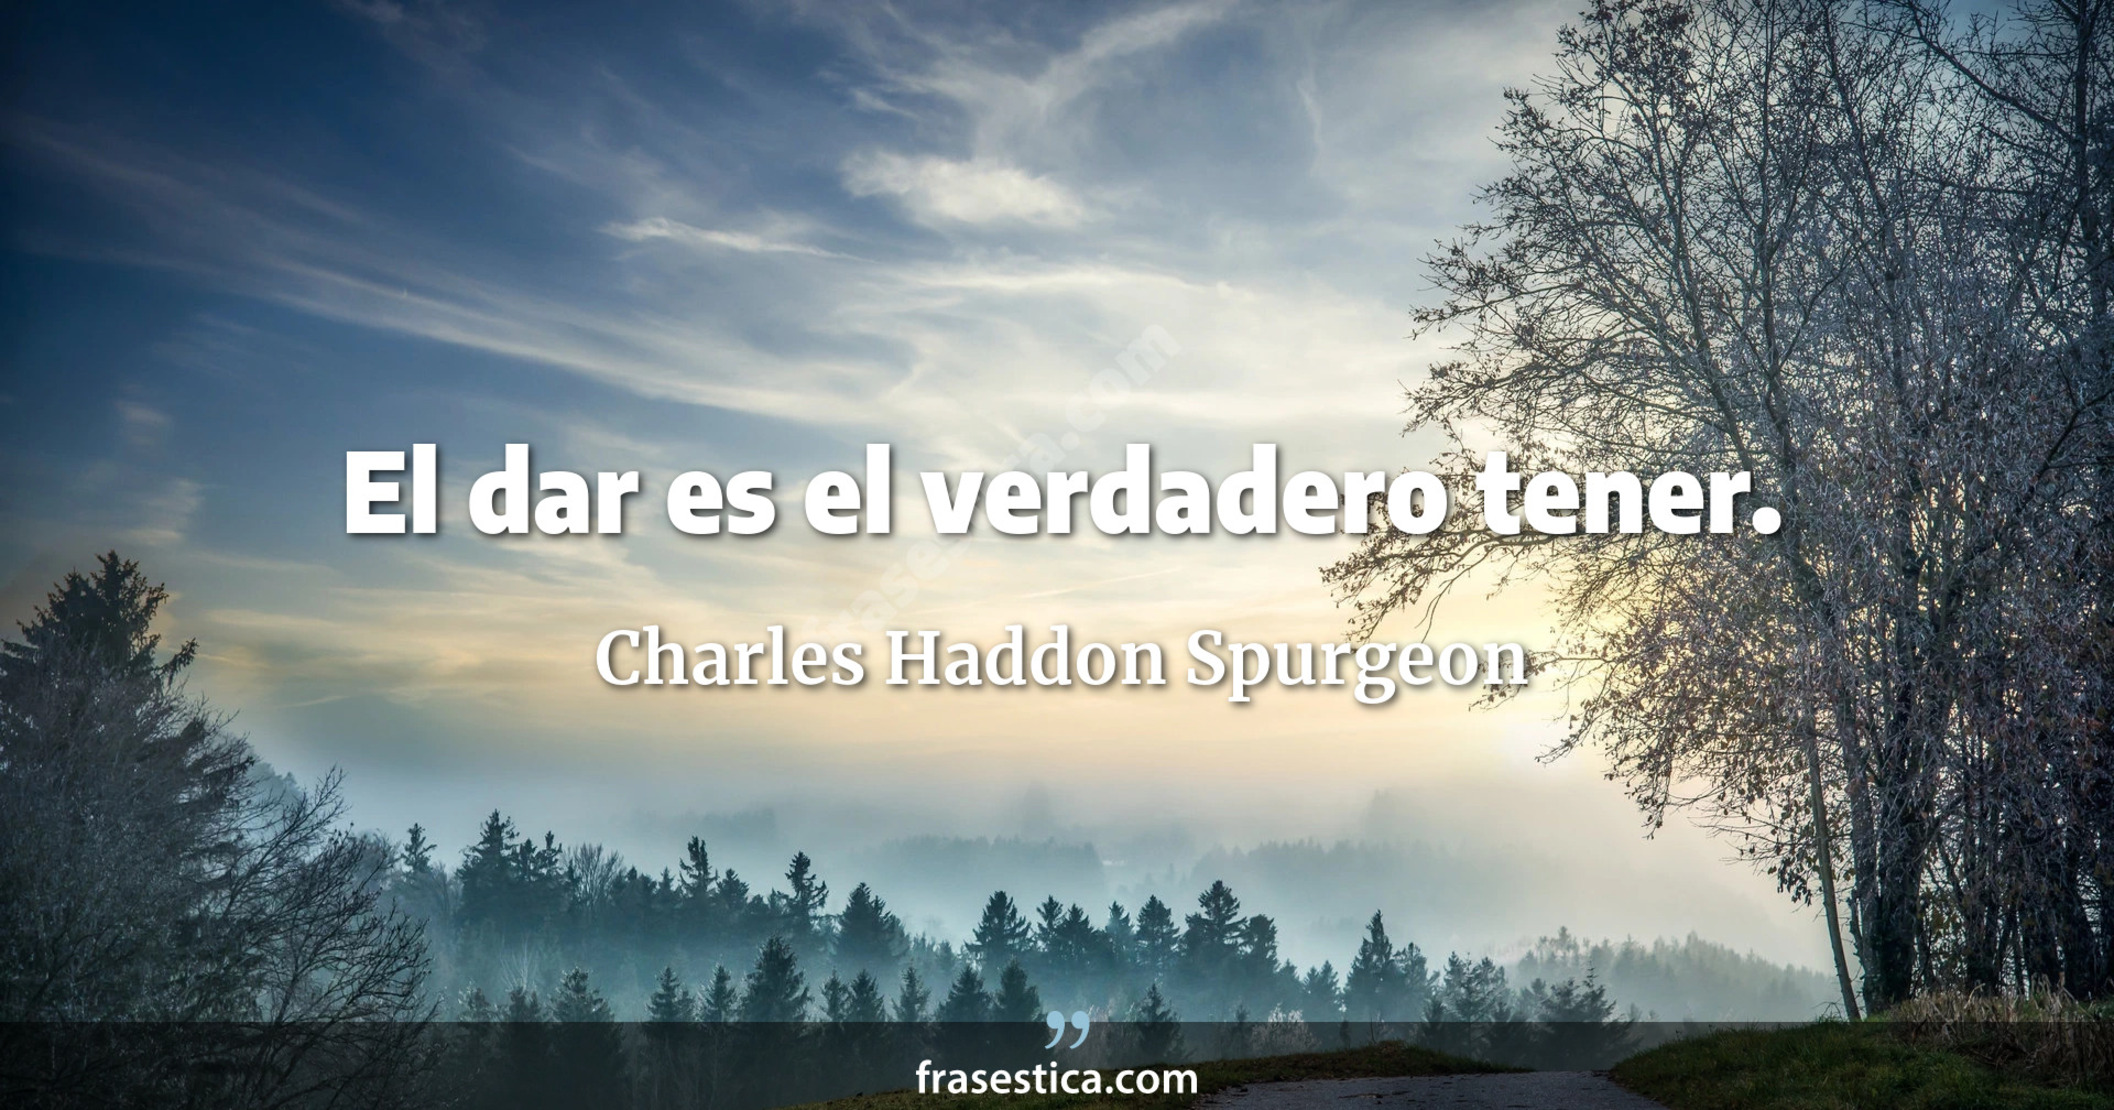 El dar es el verdadero tener. - Charles Haddon Spurgeon